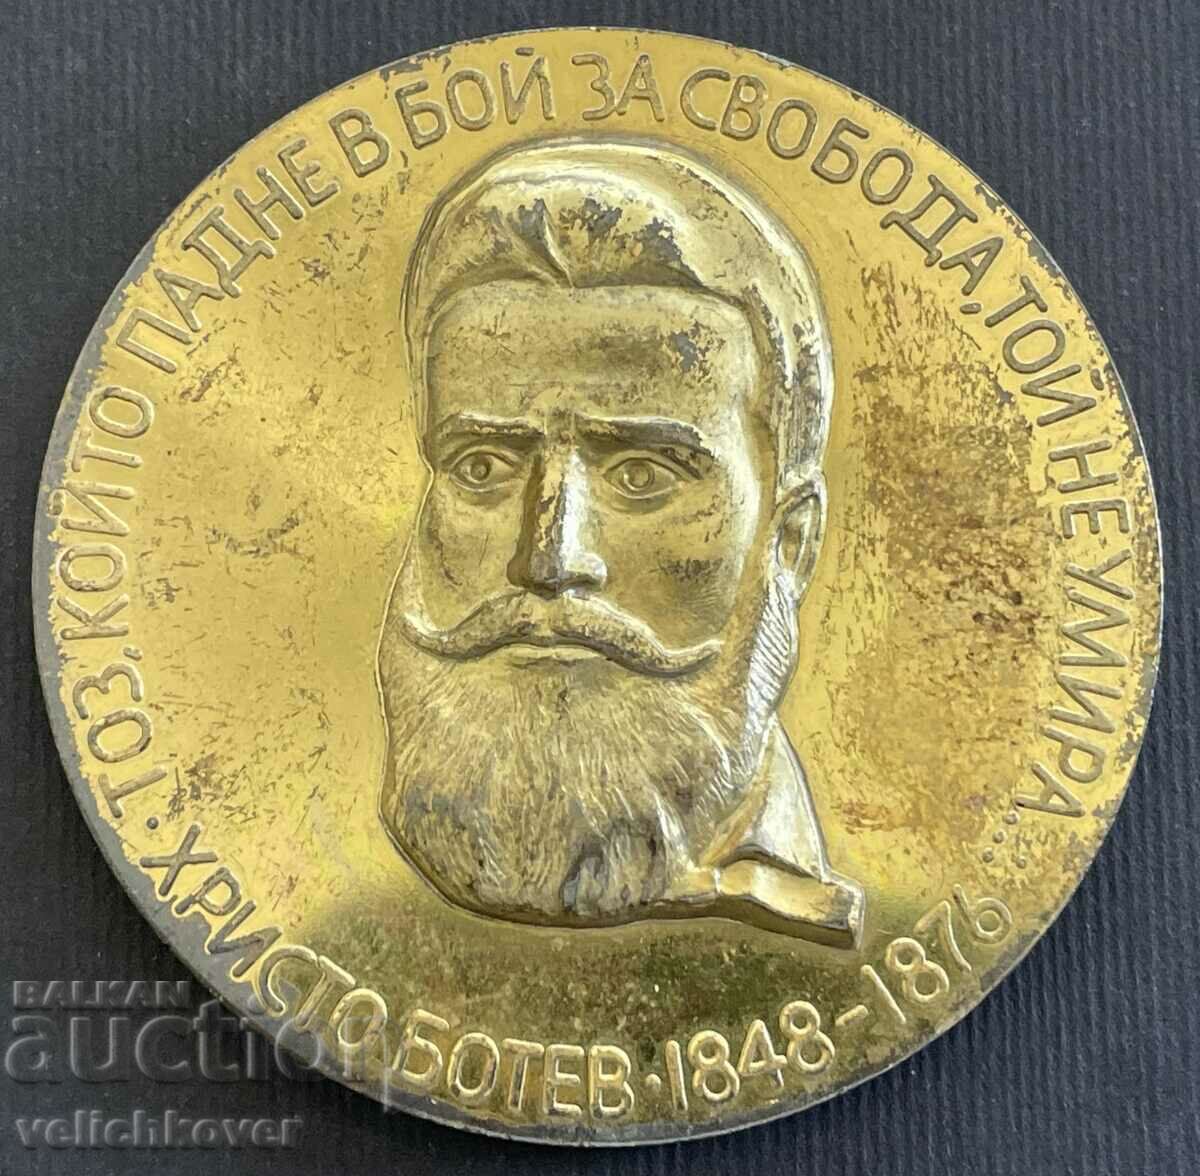 36976 Placa Bulgariei 90 de ani De la moartea lui Hristo Botev Radetsky